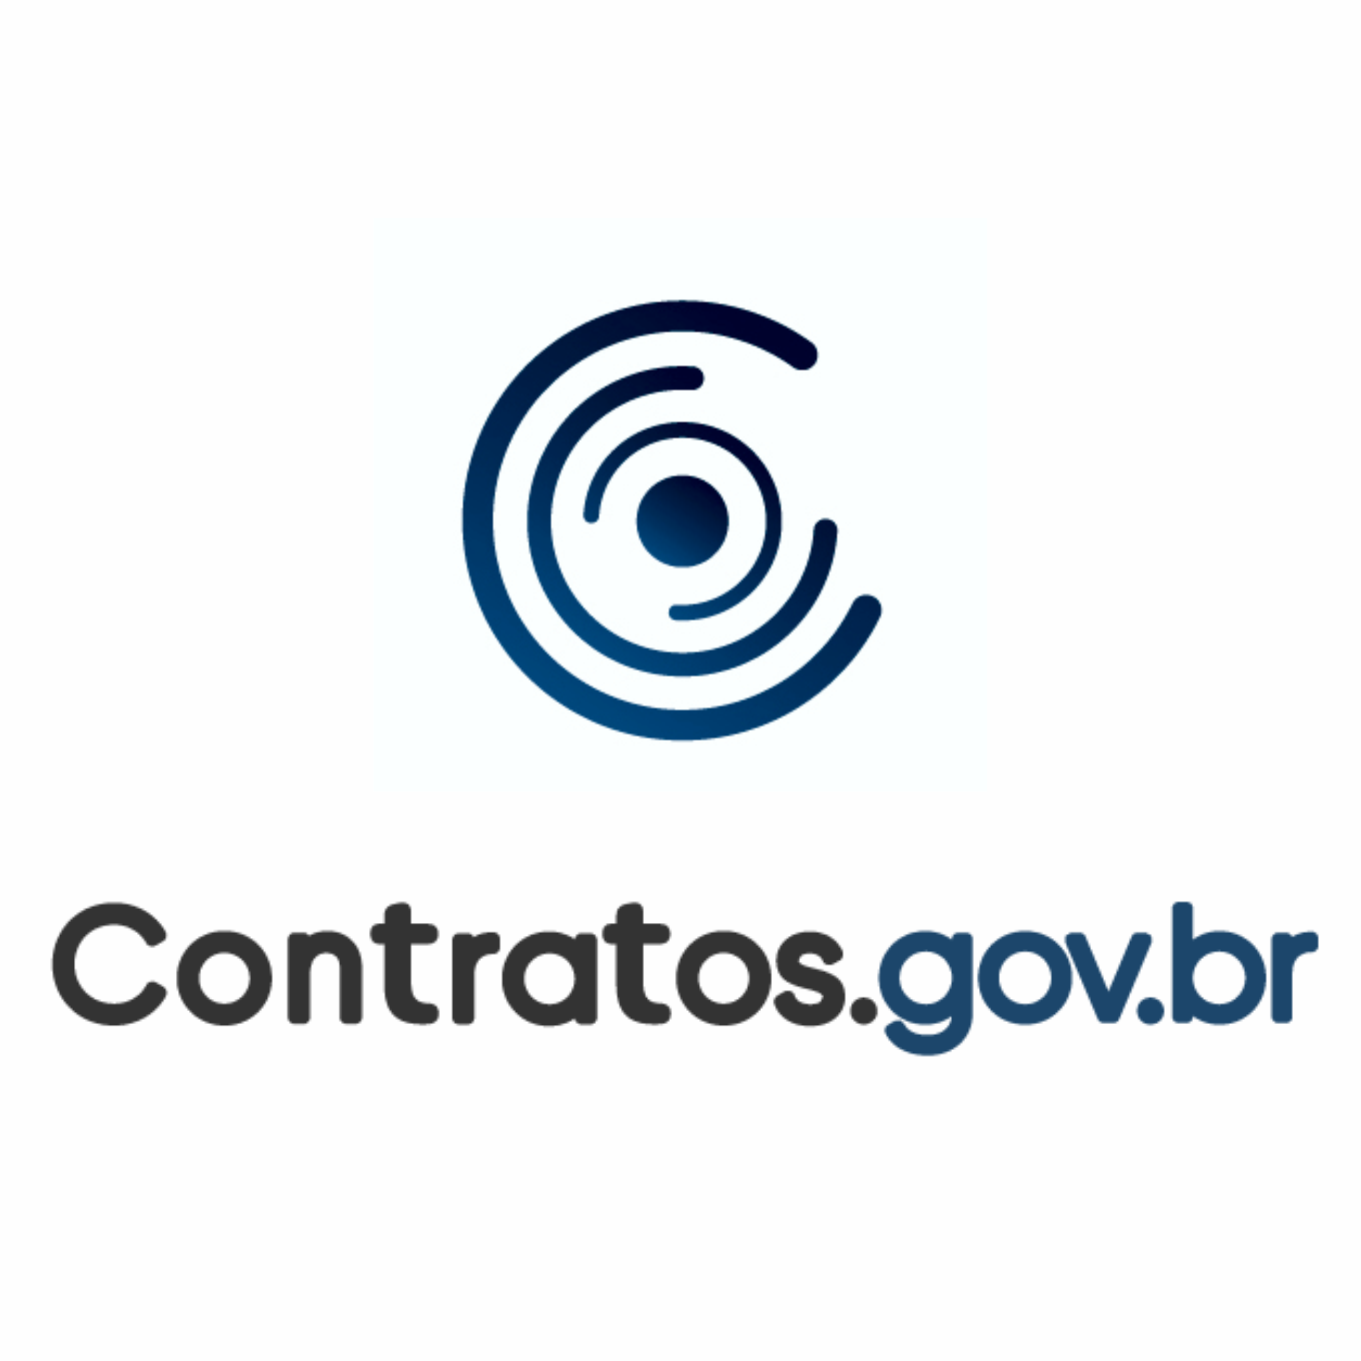 Treinamento Contratos.gov.br - TRE/RJ - Fiscalização 02 - 2023